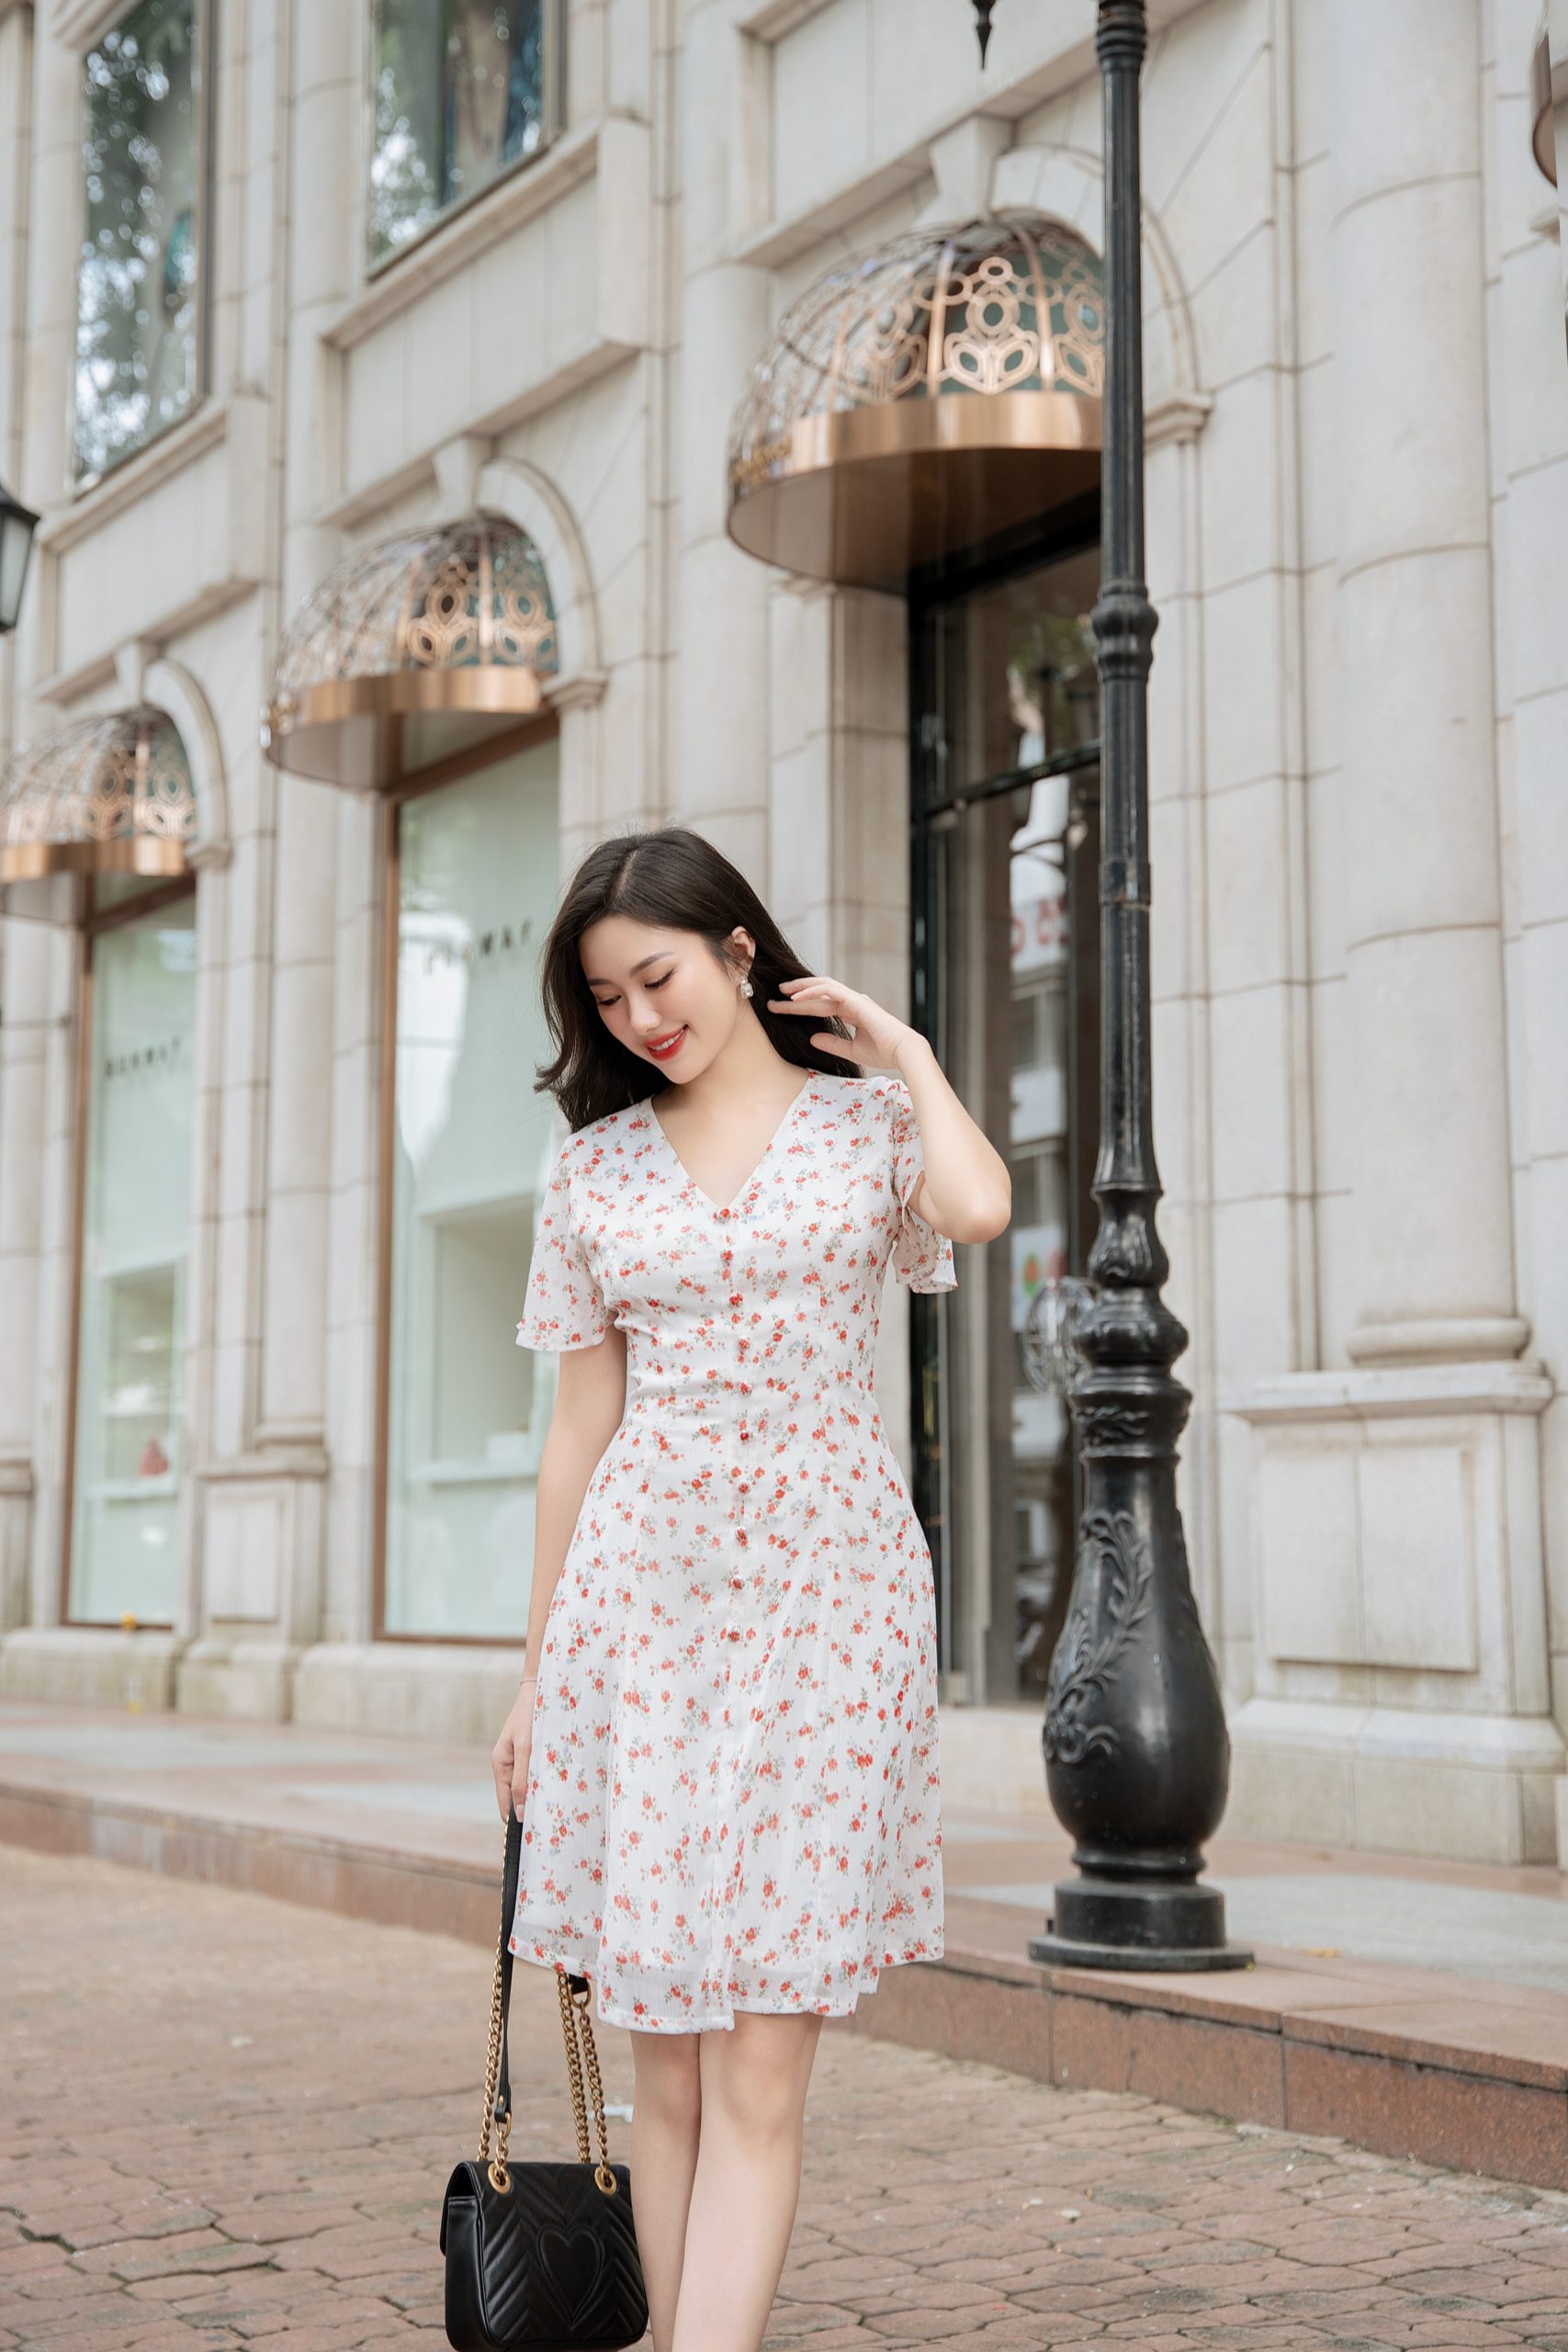 Quần áo thời trang nữ váy đầm đẹp giá rẻ nhất tại tphcm | Thời Trang Red